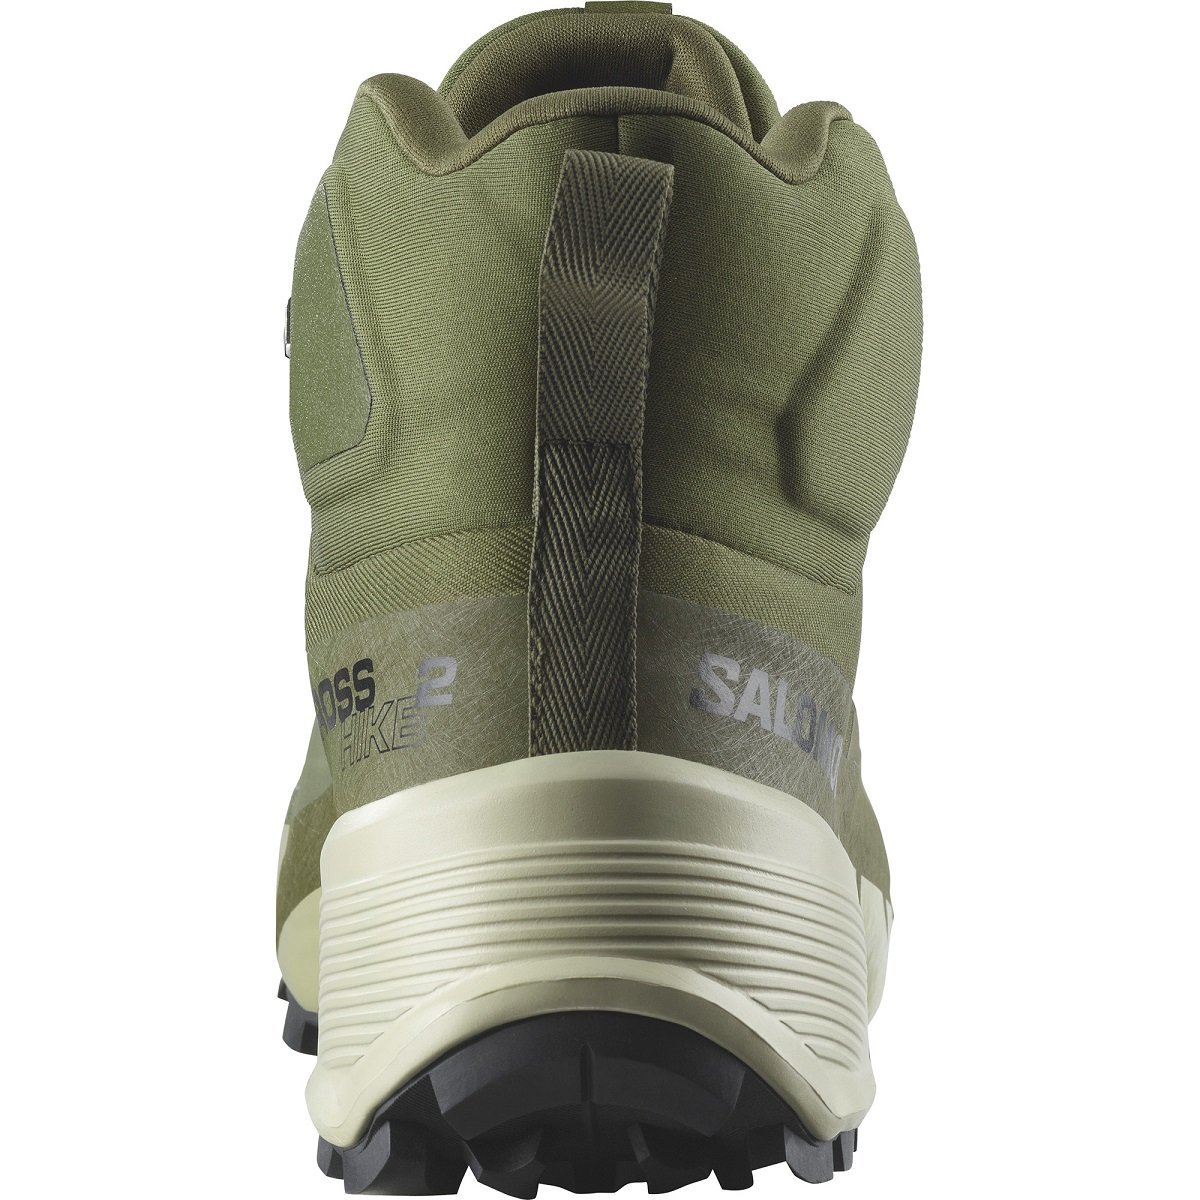 Кросівки високі Salomon Cross Hike Mid GTX 2 M - зелені/ чорні